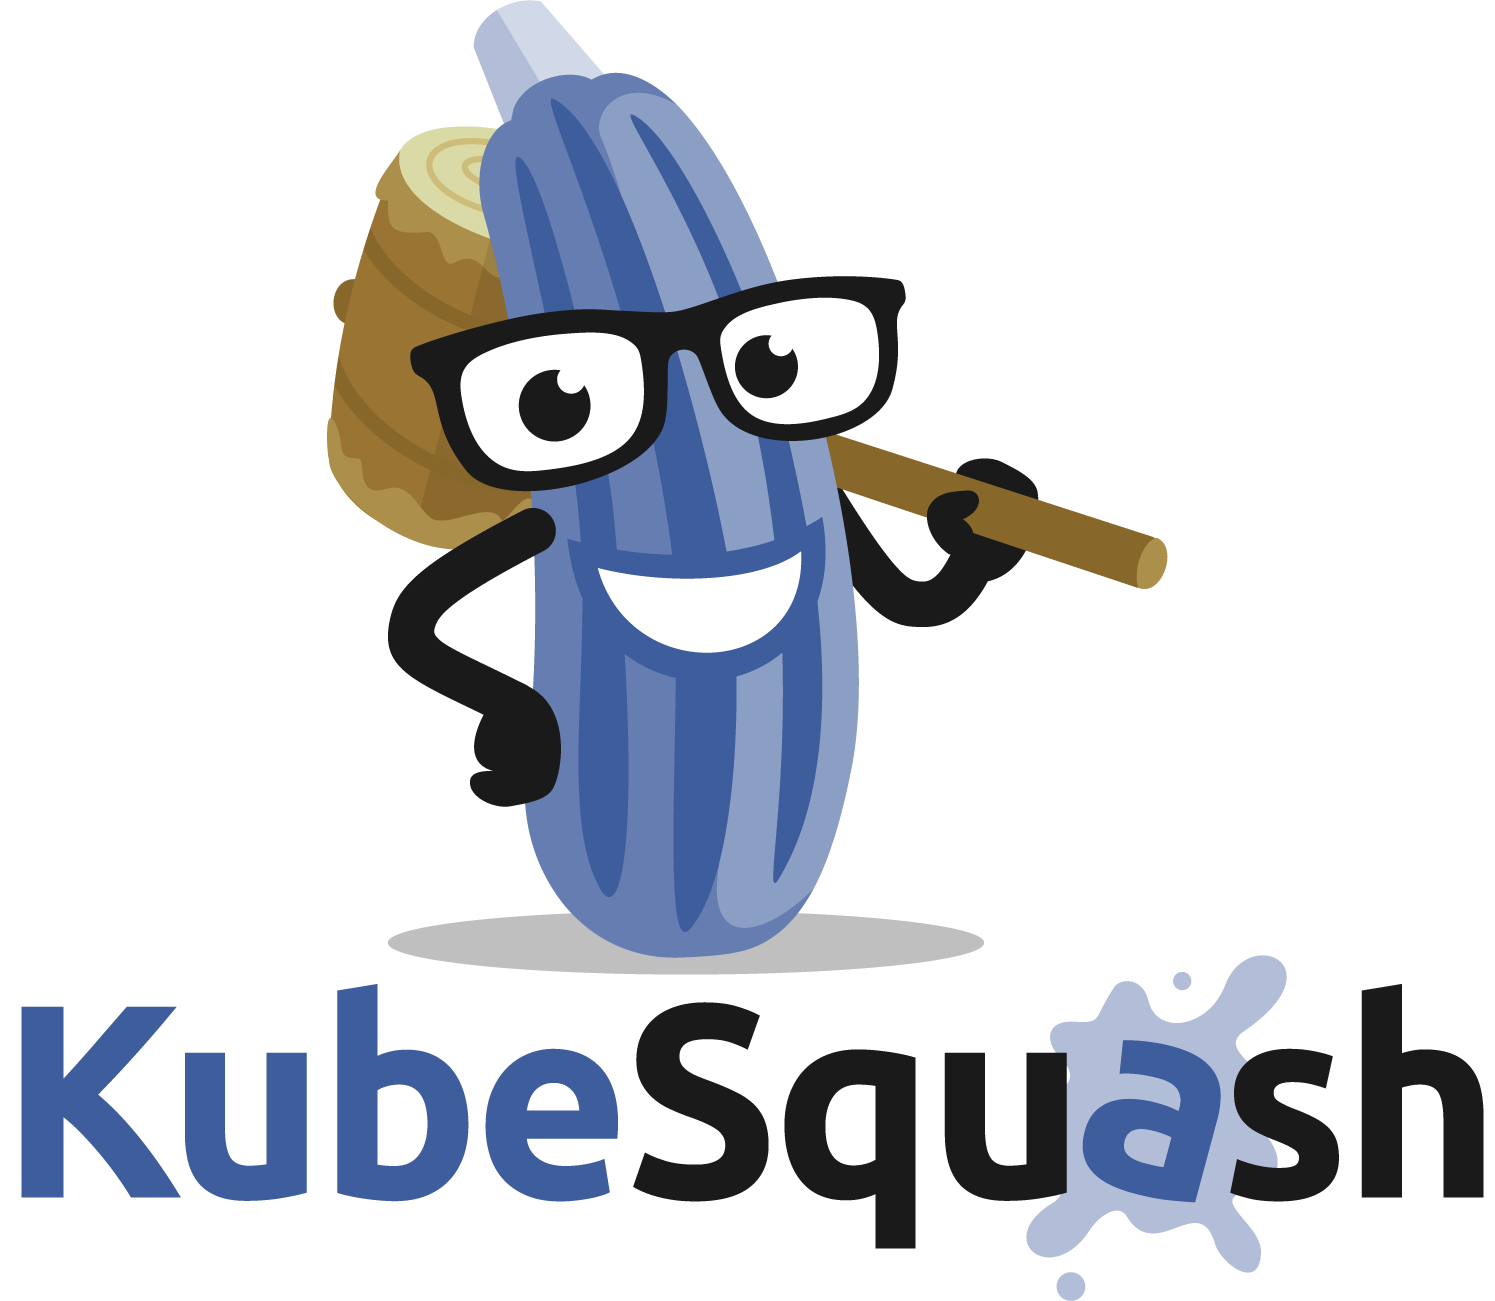 KubeSquash for VSCode